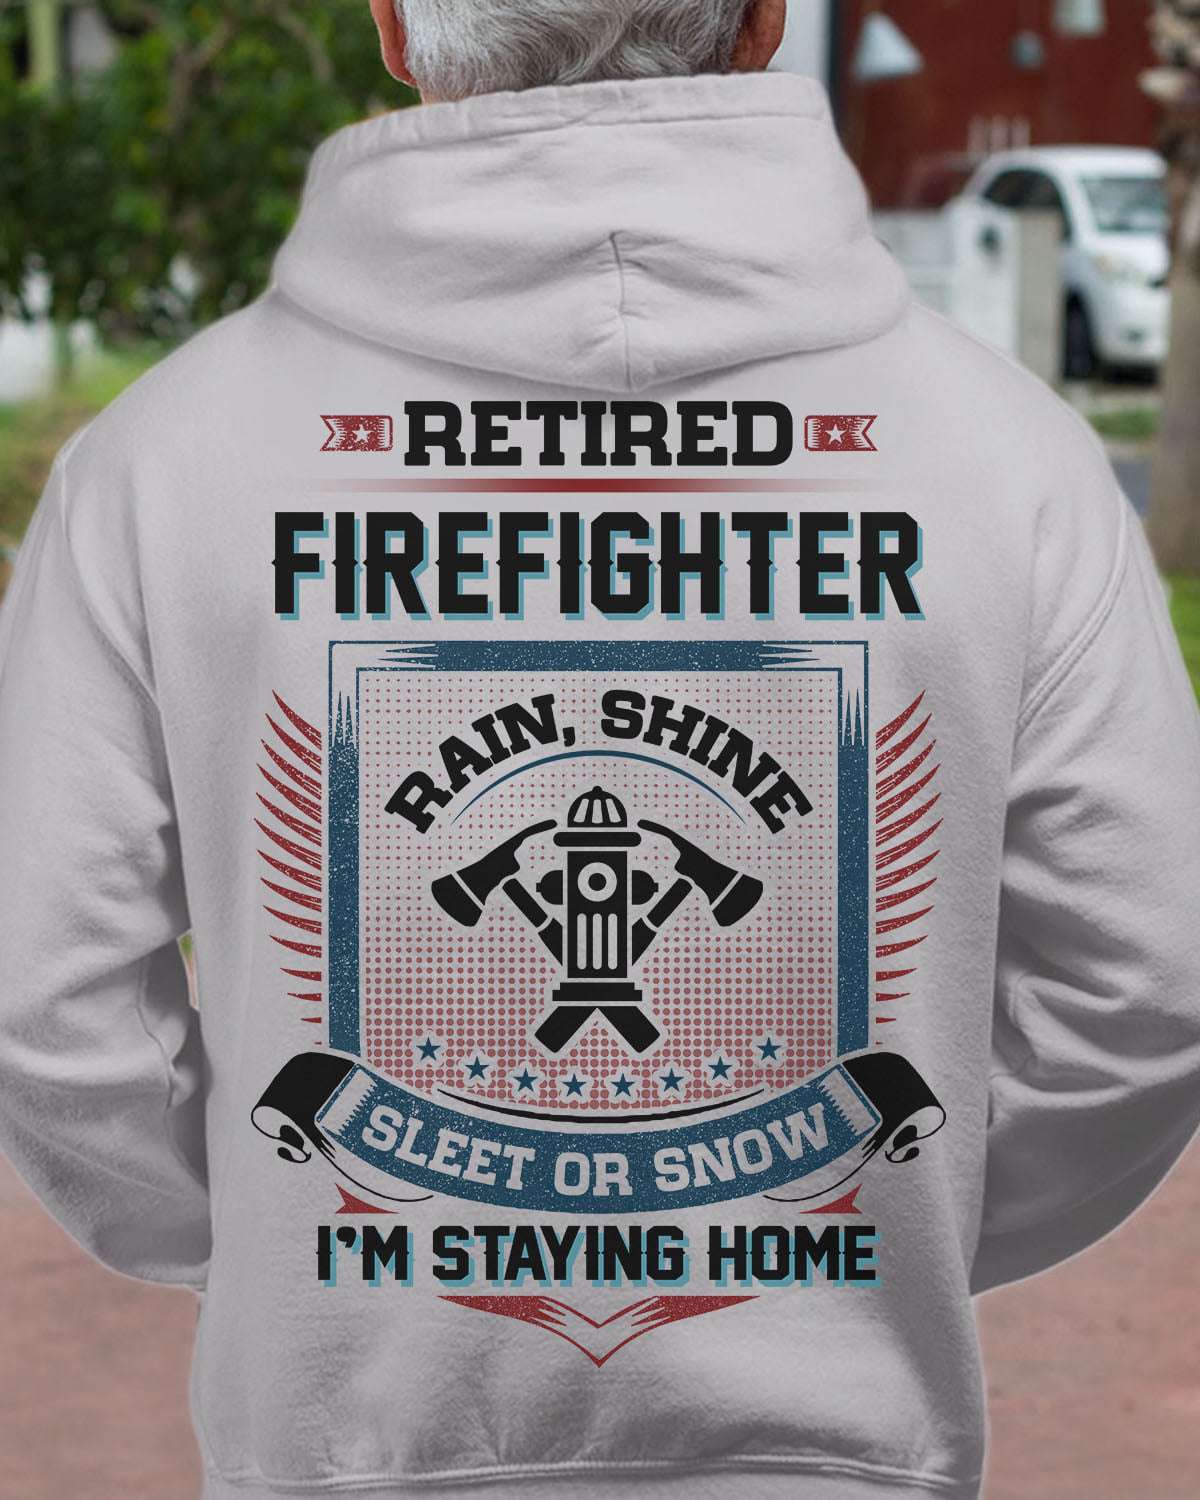 Firefighter 11 September - Retired Firefighter rain shine sleet or snow i'm staying home